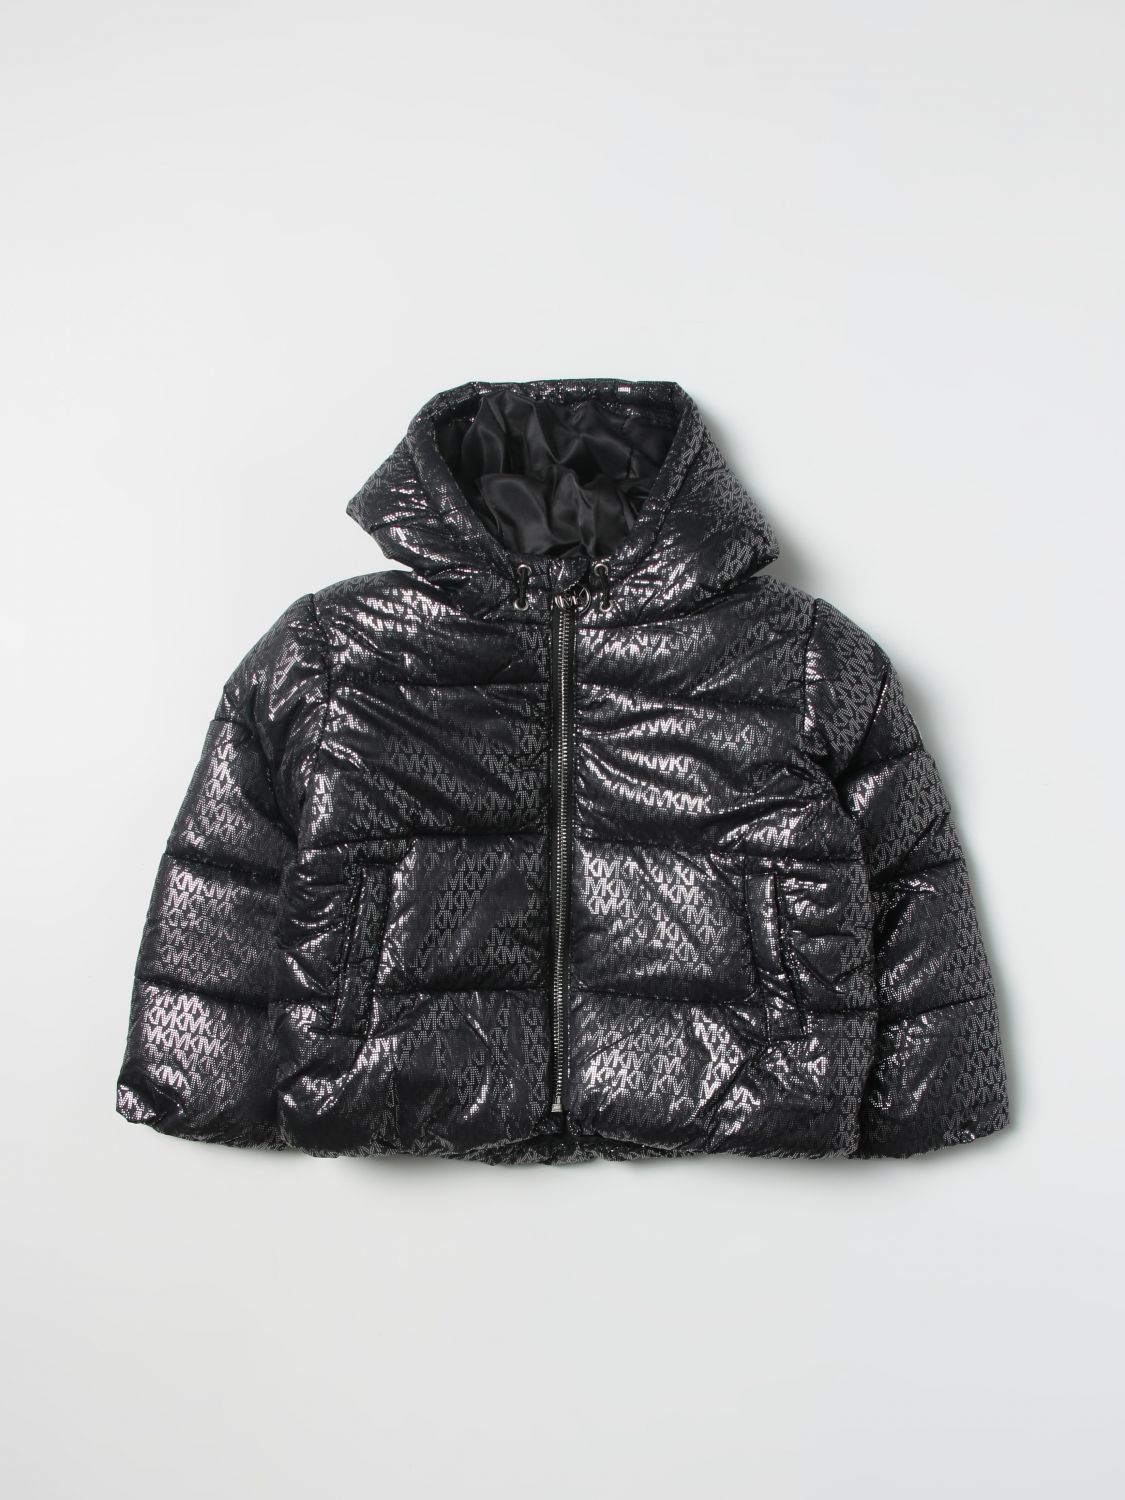 Michael Kors Outlet: jacket for girls - Black | Michael Kors jacket R16116  online on 